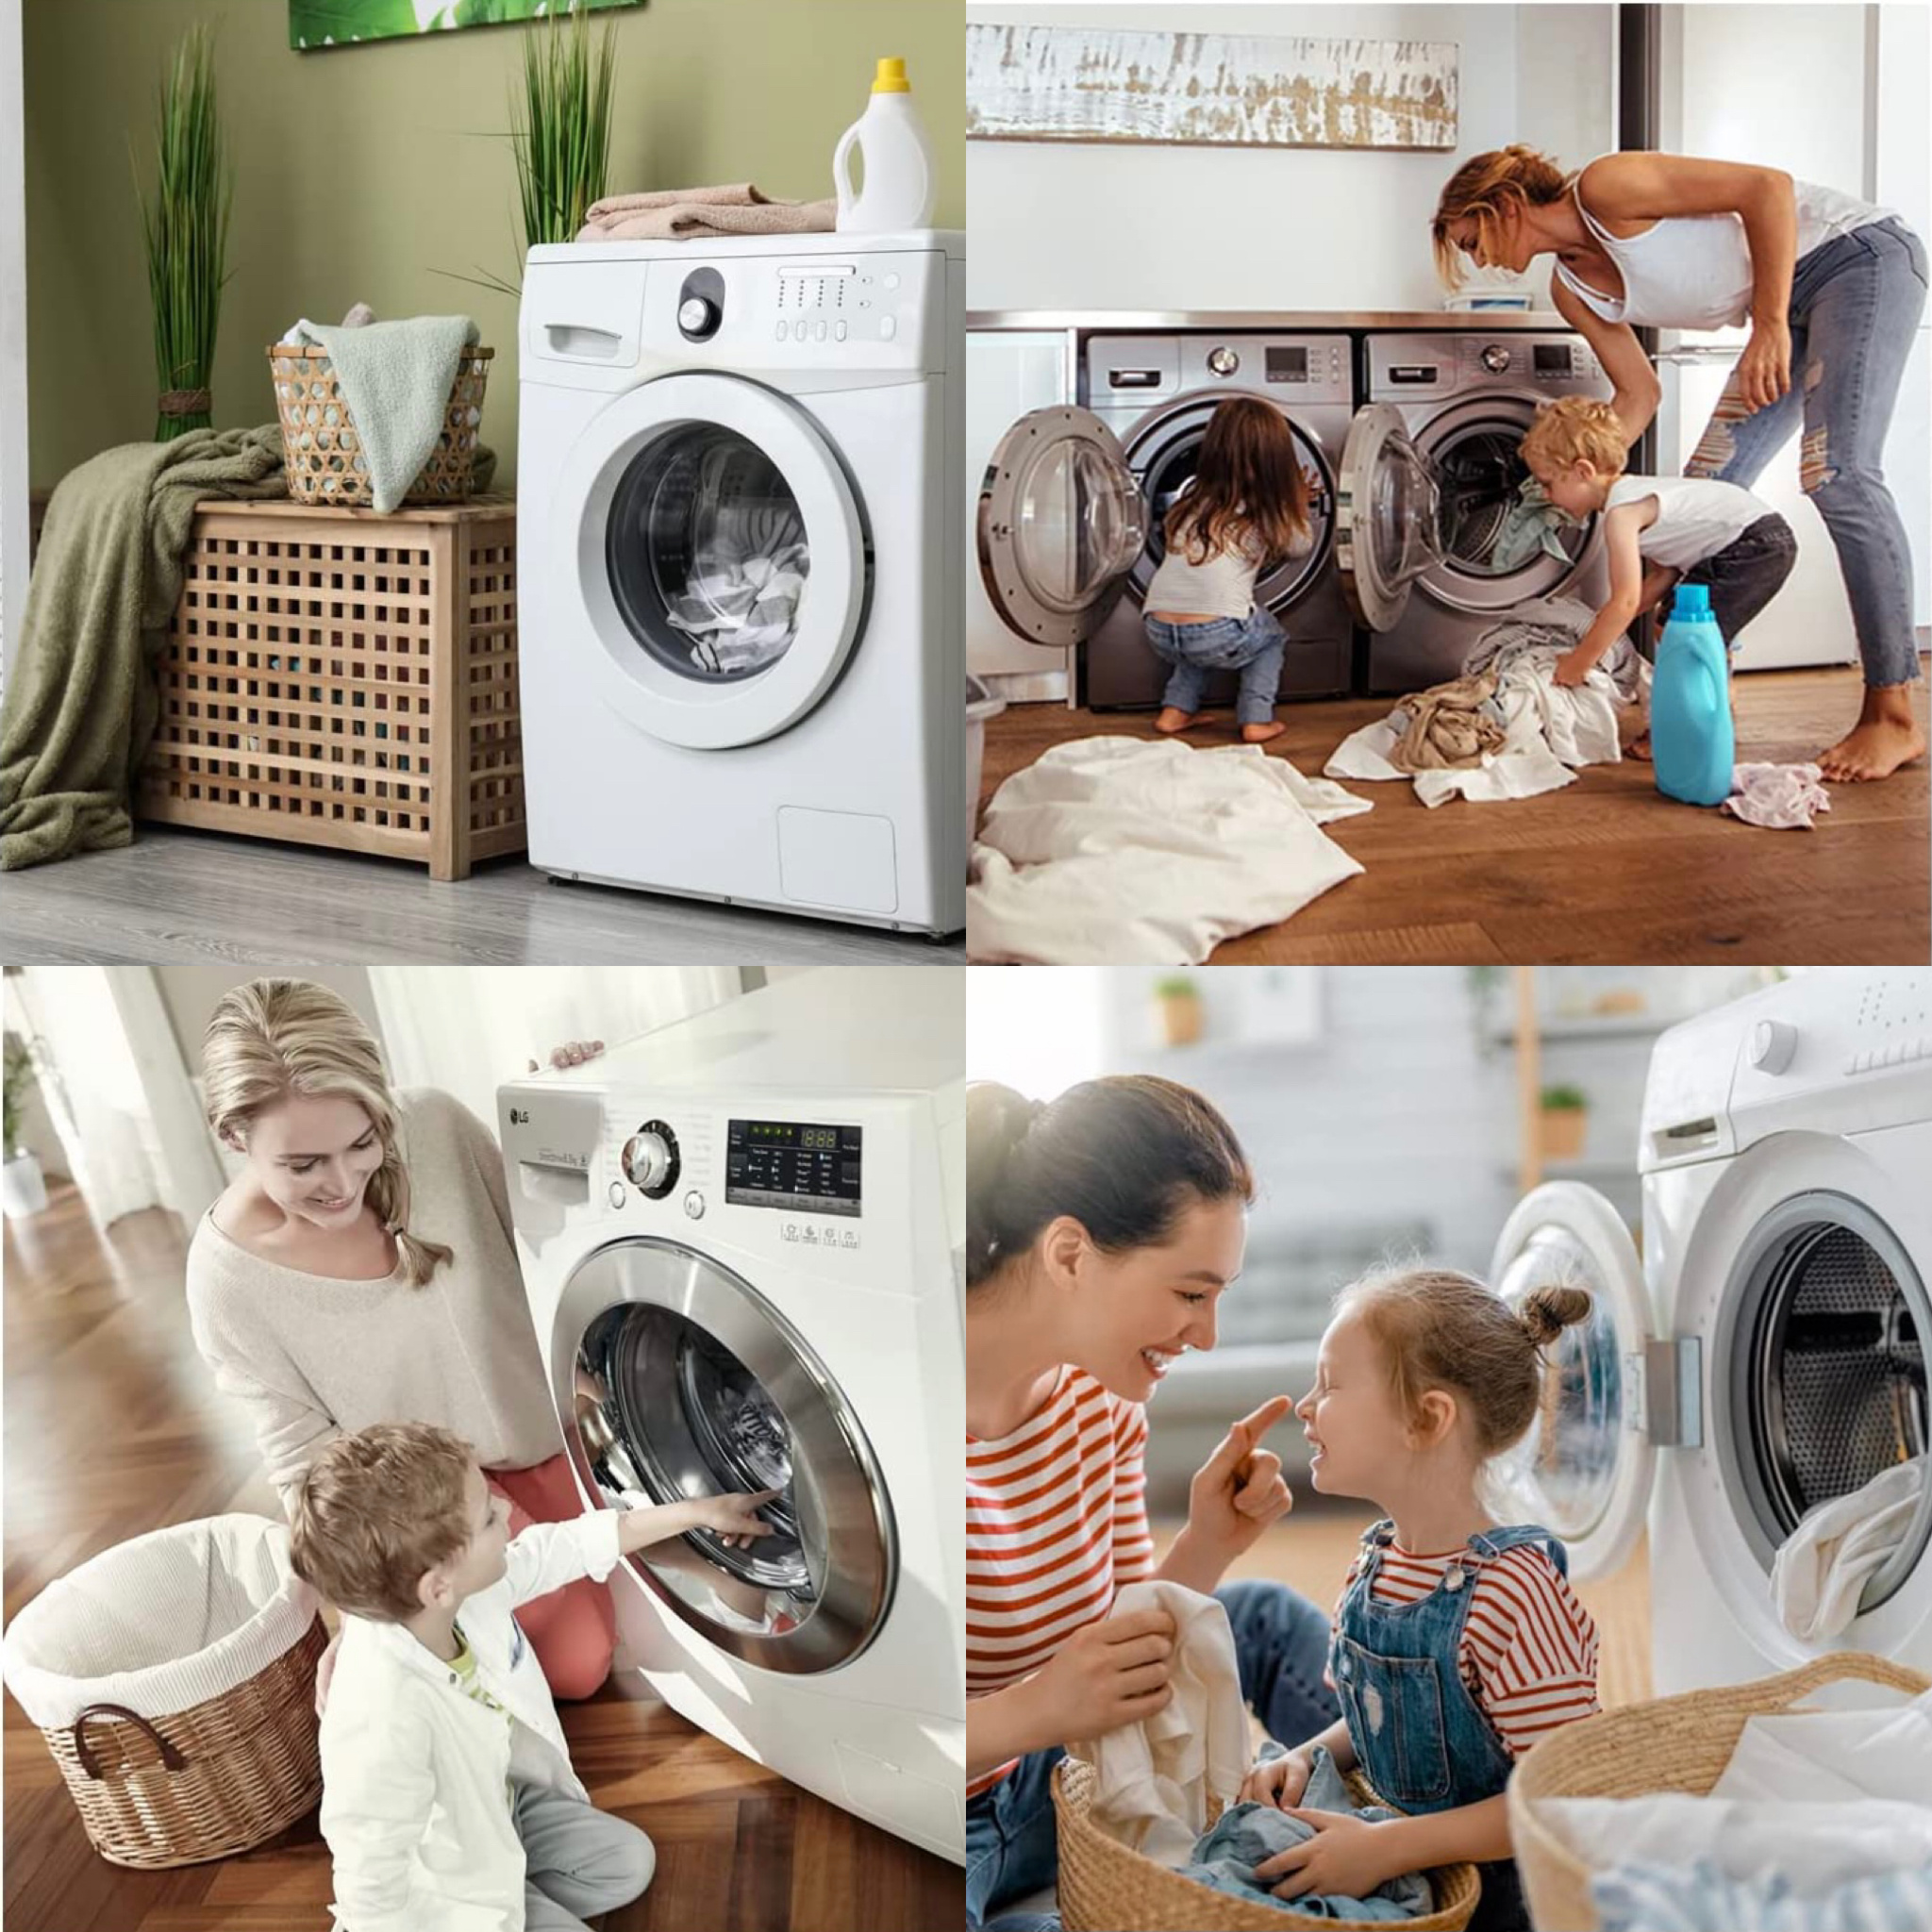 vidange pour machines à laver - Flexible universel - Rallonge vidange  épaissie avec pince - 20 mm, 24 mm, 30 mm, 38 m